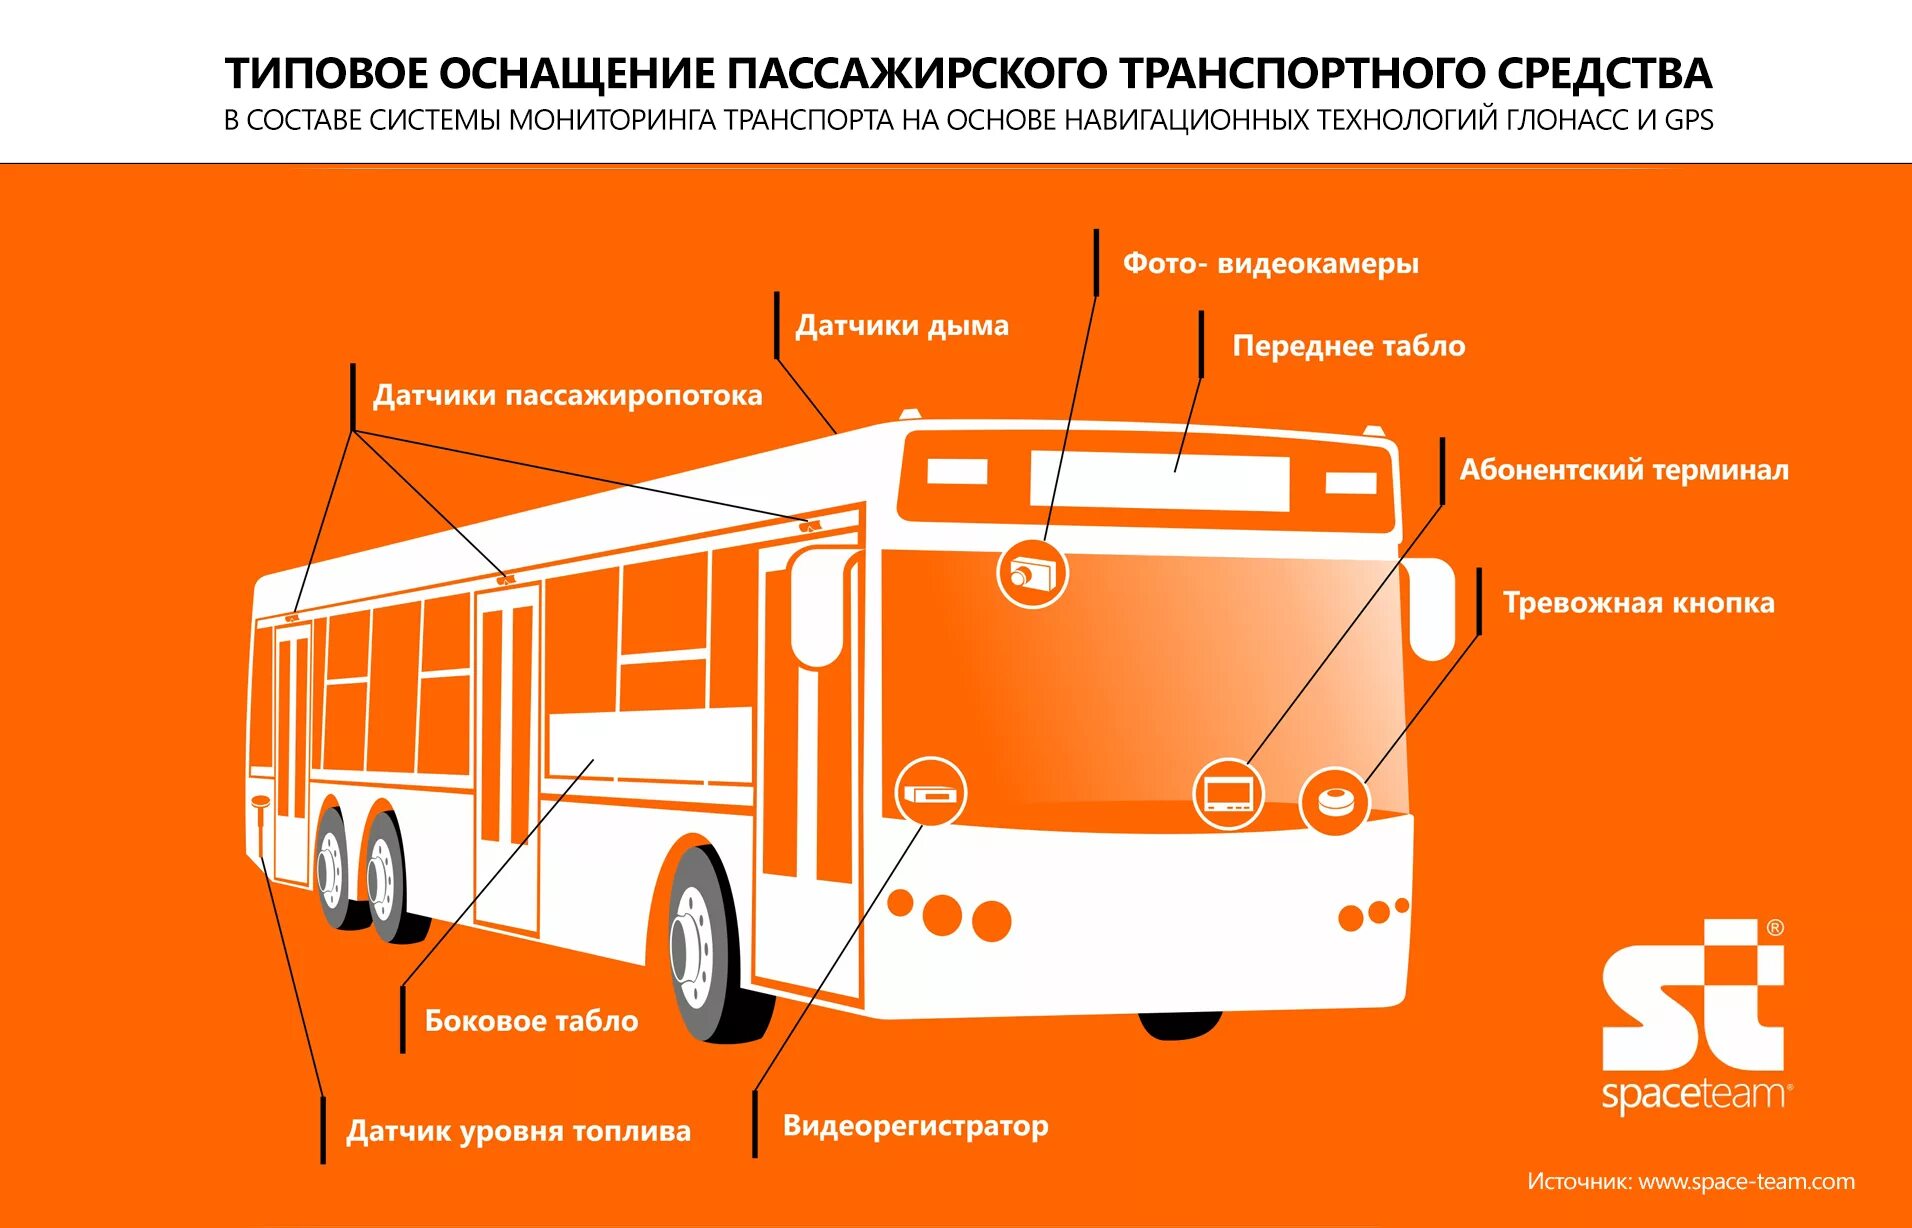 Документы общественного транспорта. Оснащение пассажирских автобусов. Требования к автобусу. Обеспечение безопасности перевозок пассажиров. Требования к пассажирскому транспорту.